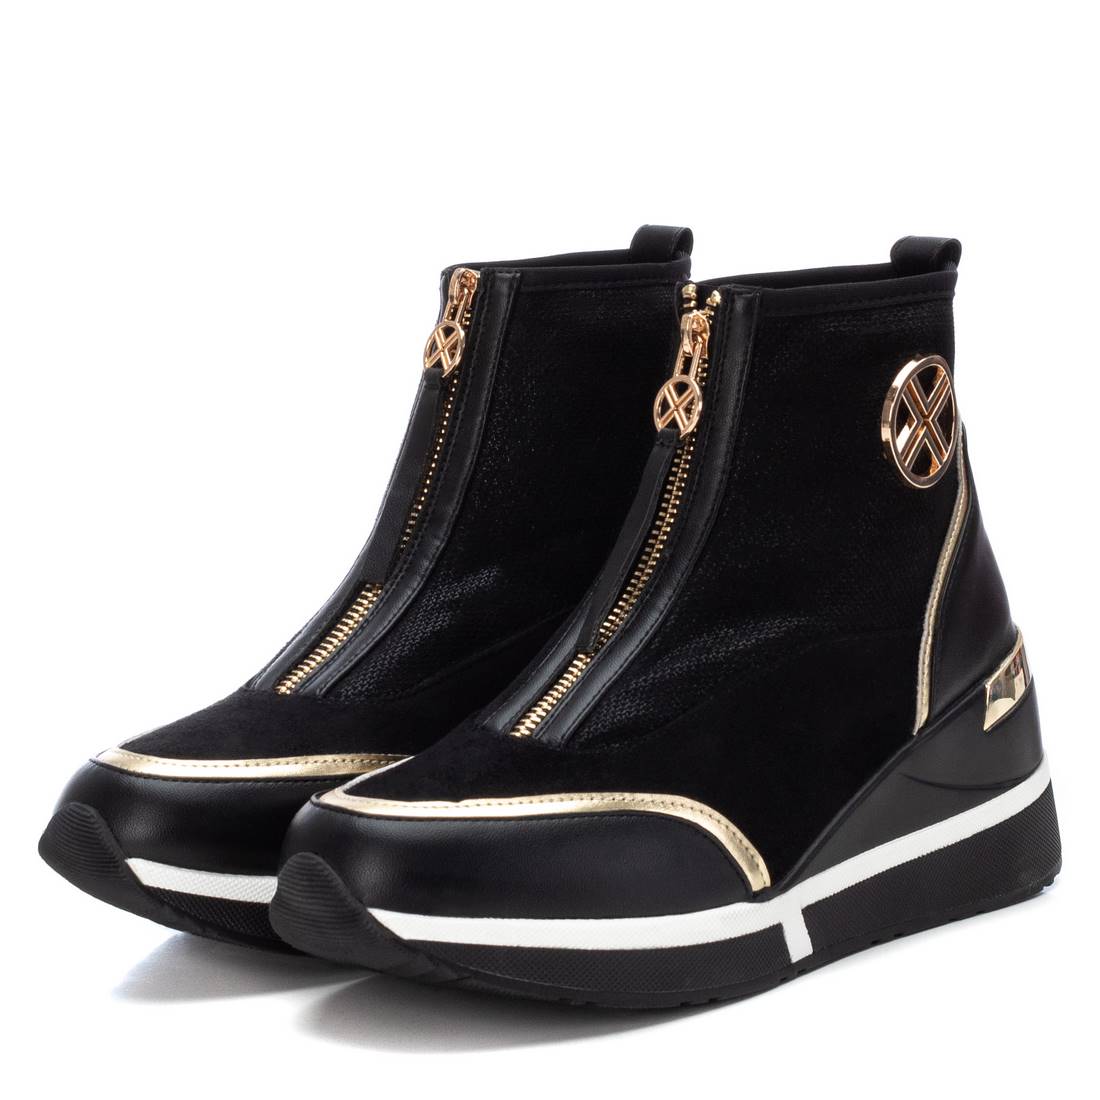 Xti 141795 Black Boots